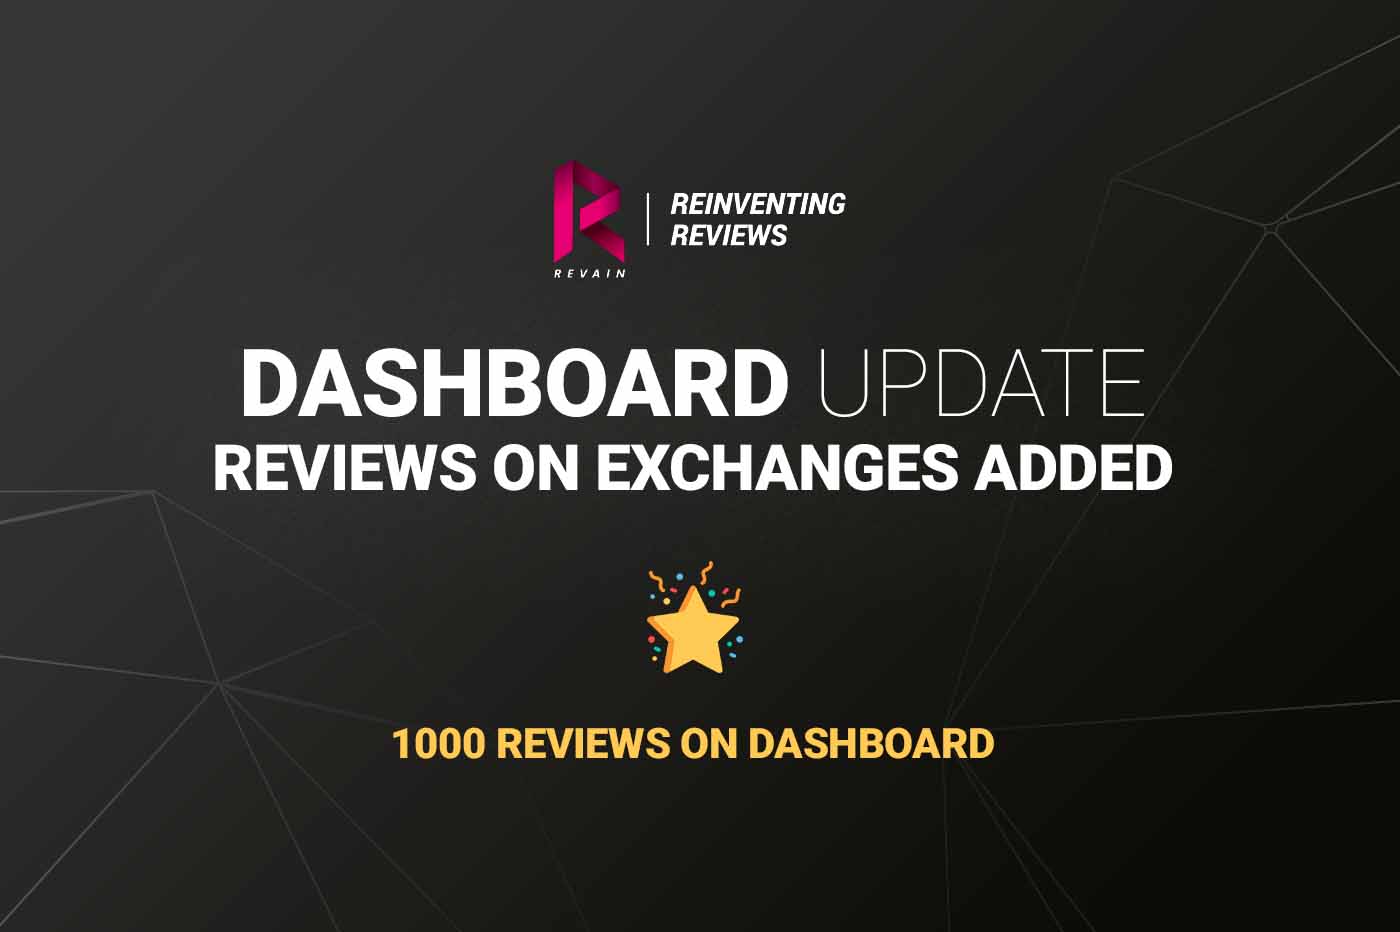 Article Revain объявляет о выпуске следующей основной версии Dashboard 0.6 после того, как платформа набрала 1000 отзывов